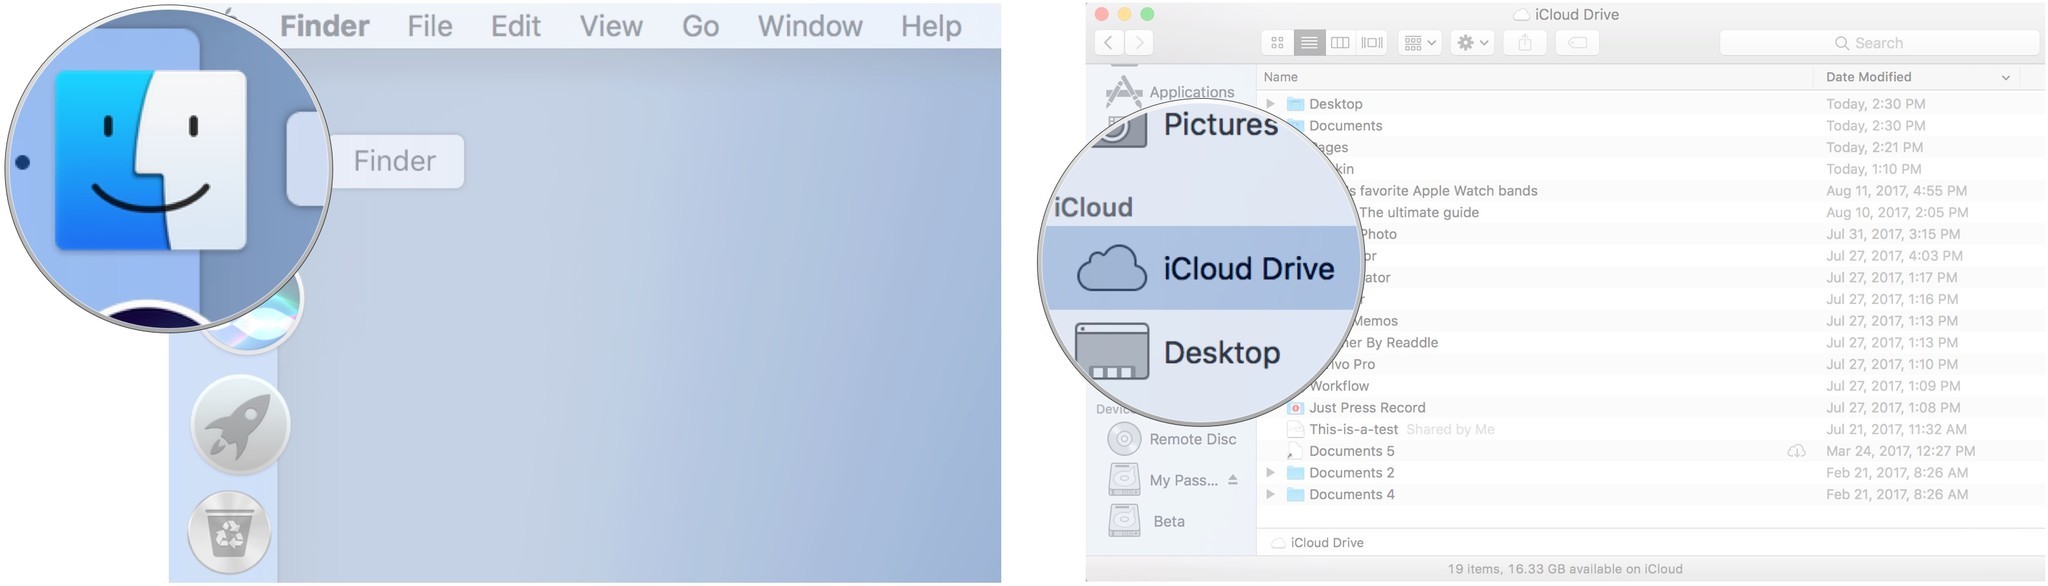 Как получить доступ к iCloud Drive из Finder на вашем Mac: нажмите Finder, затем нажмите iCloud Drive